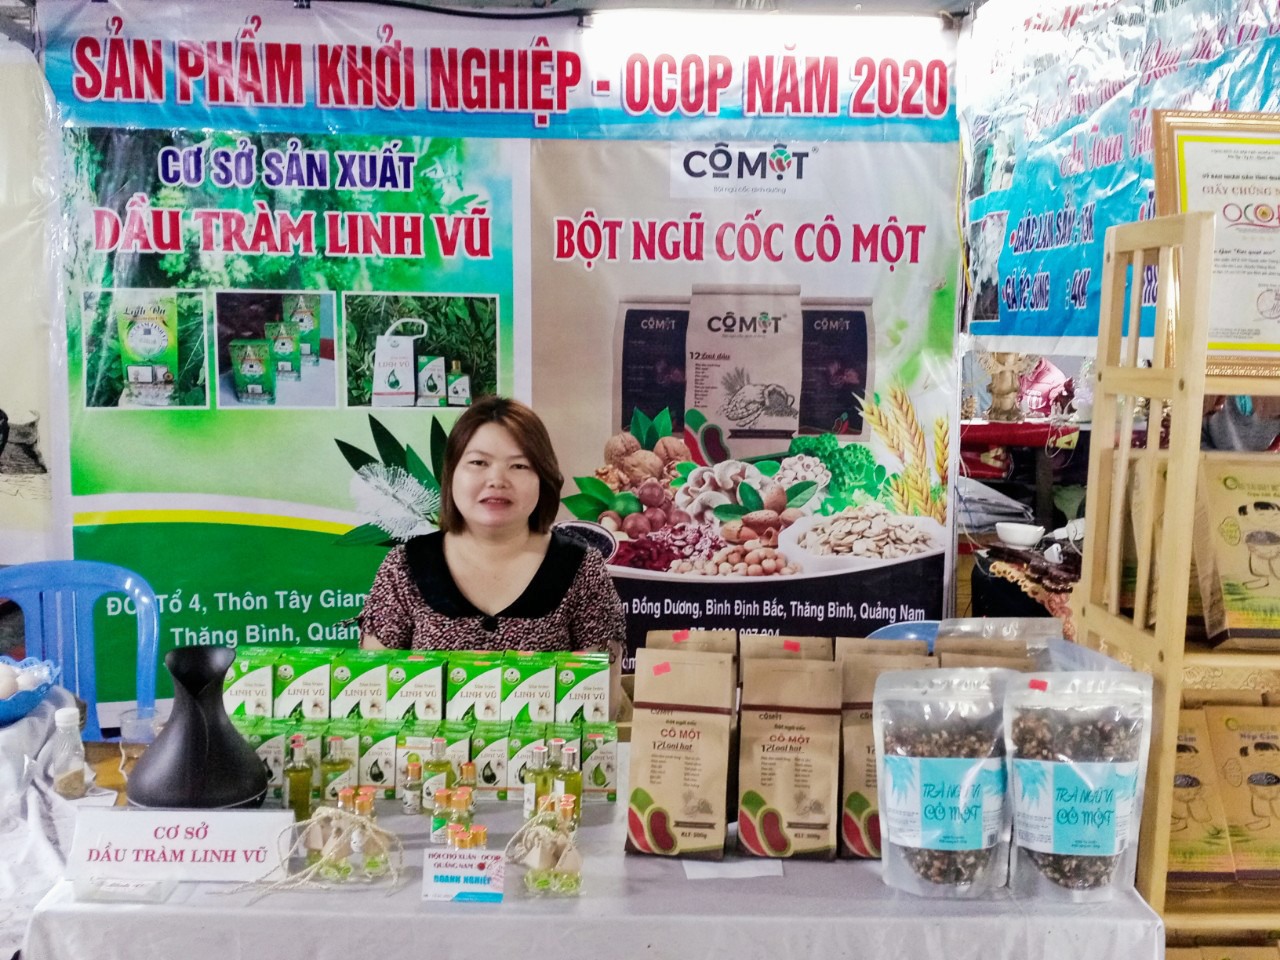 Quảng Nam Hỗ trợ phụ nữ khởi nghiệp